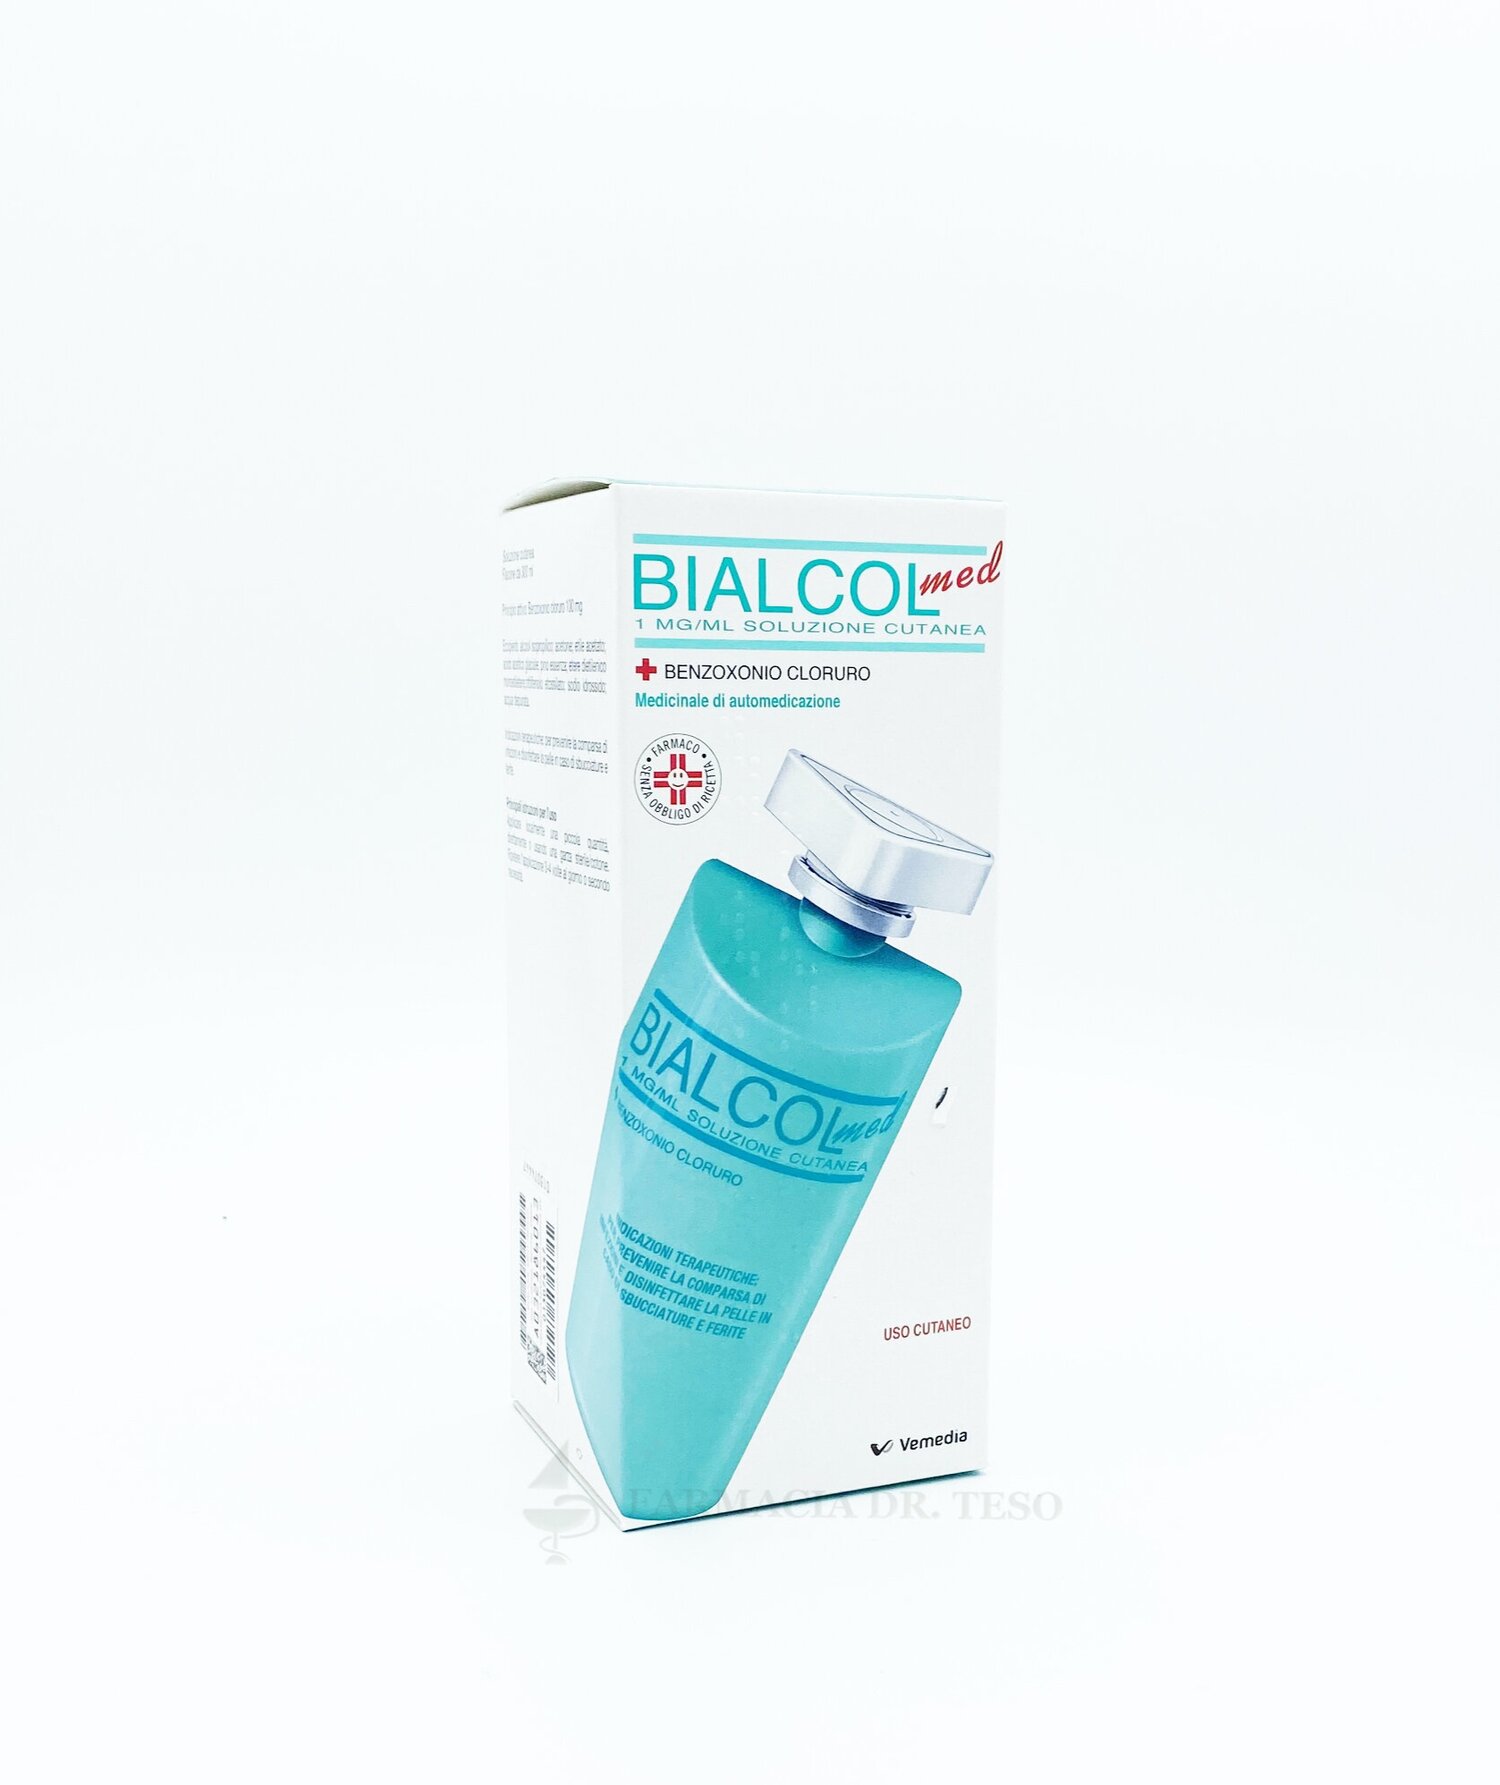 Bialcol Med, 300ml — Farmacia dott. Teso